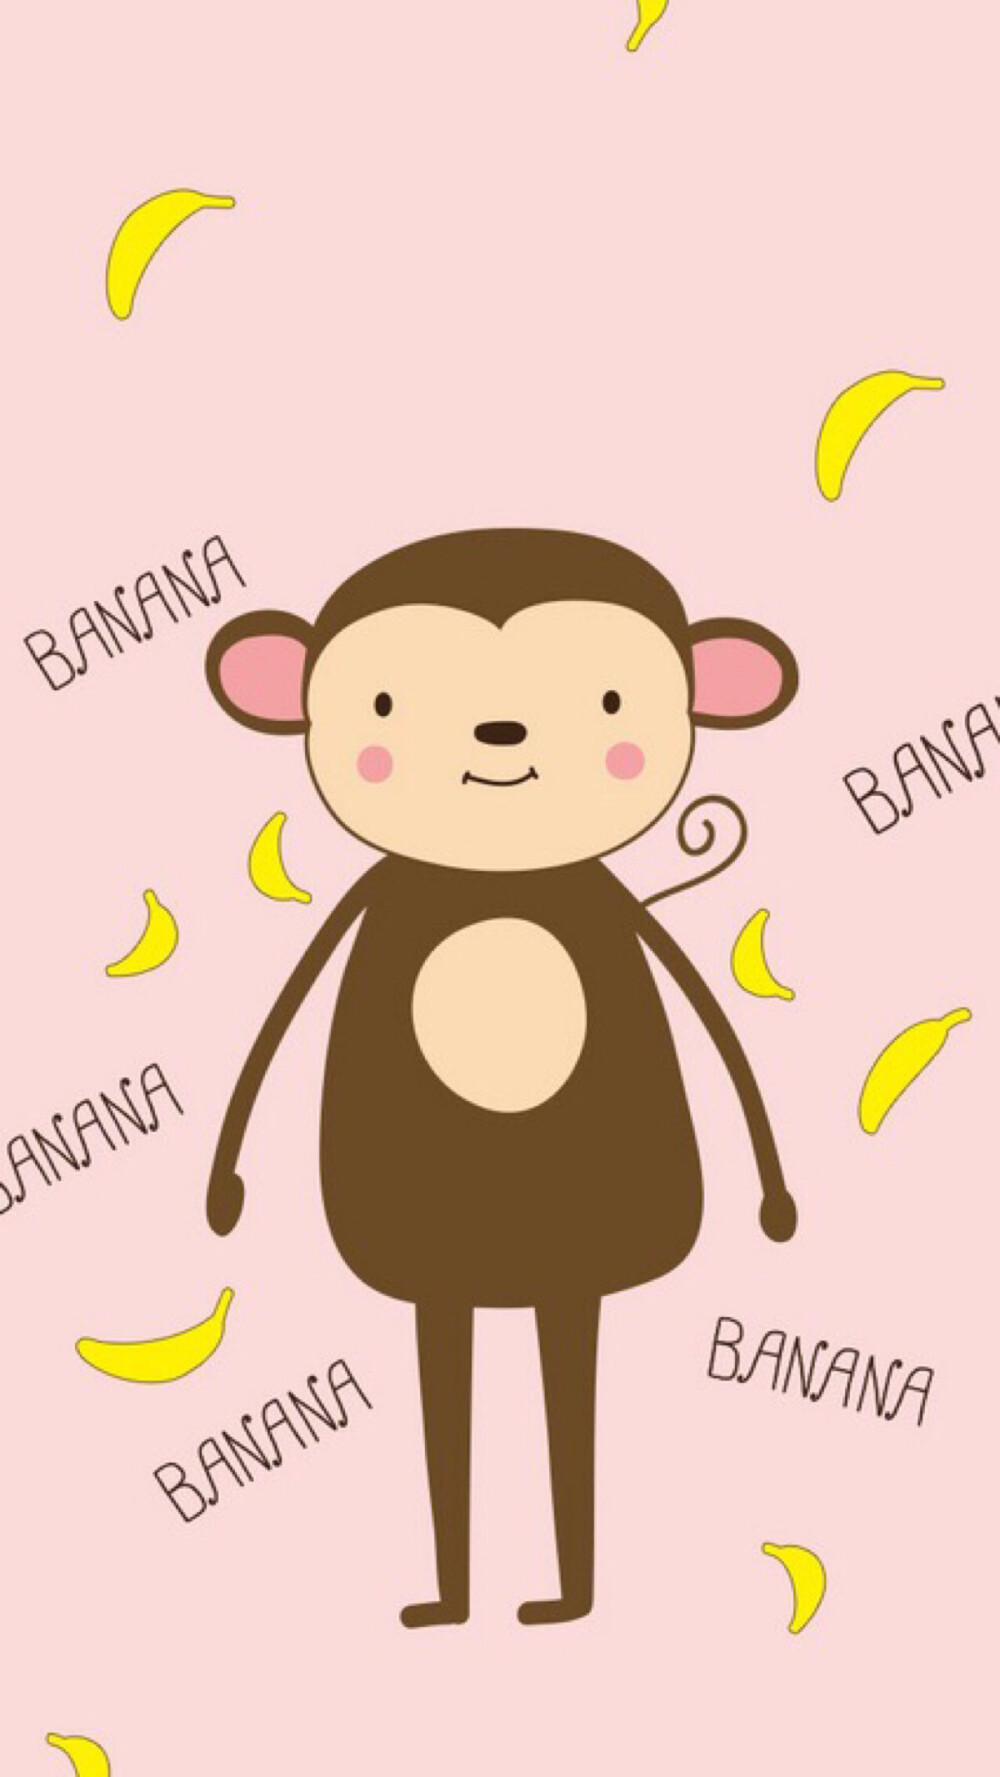 猴子卡通手机壁纸图片